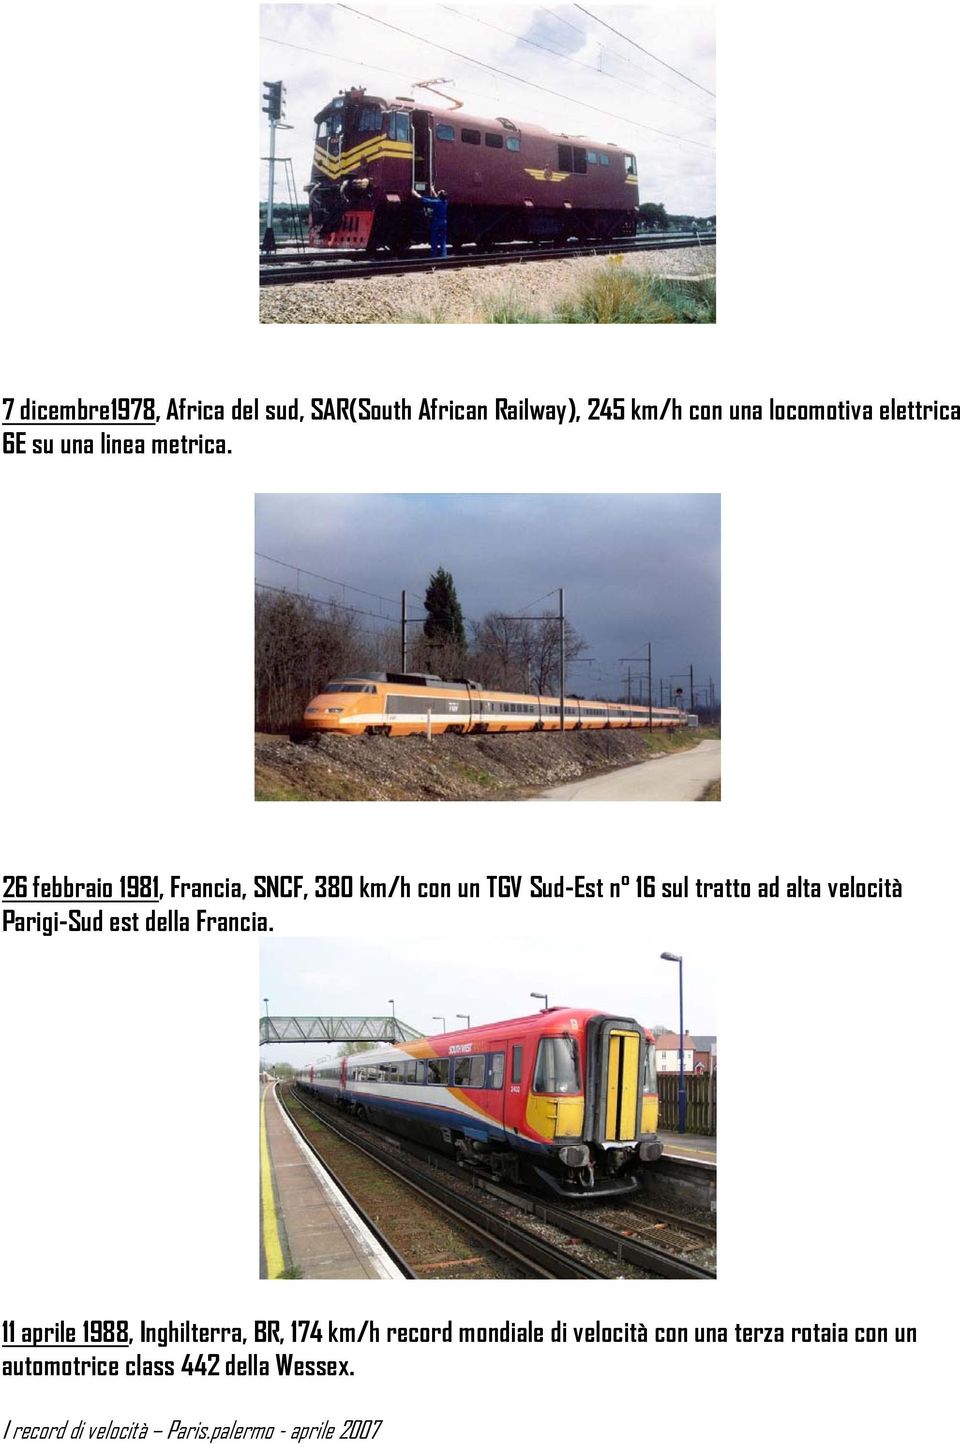 26 febbraio 1981, Francia, SNCF, 380 km/h con un TGV Sud-Est n 16 sul tratto ad alta velocità